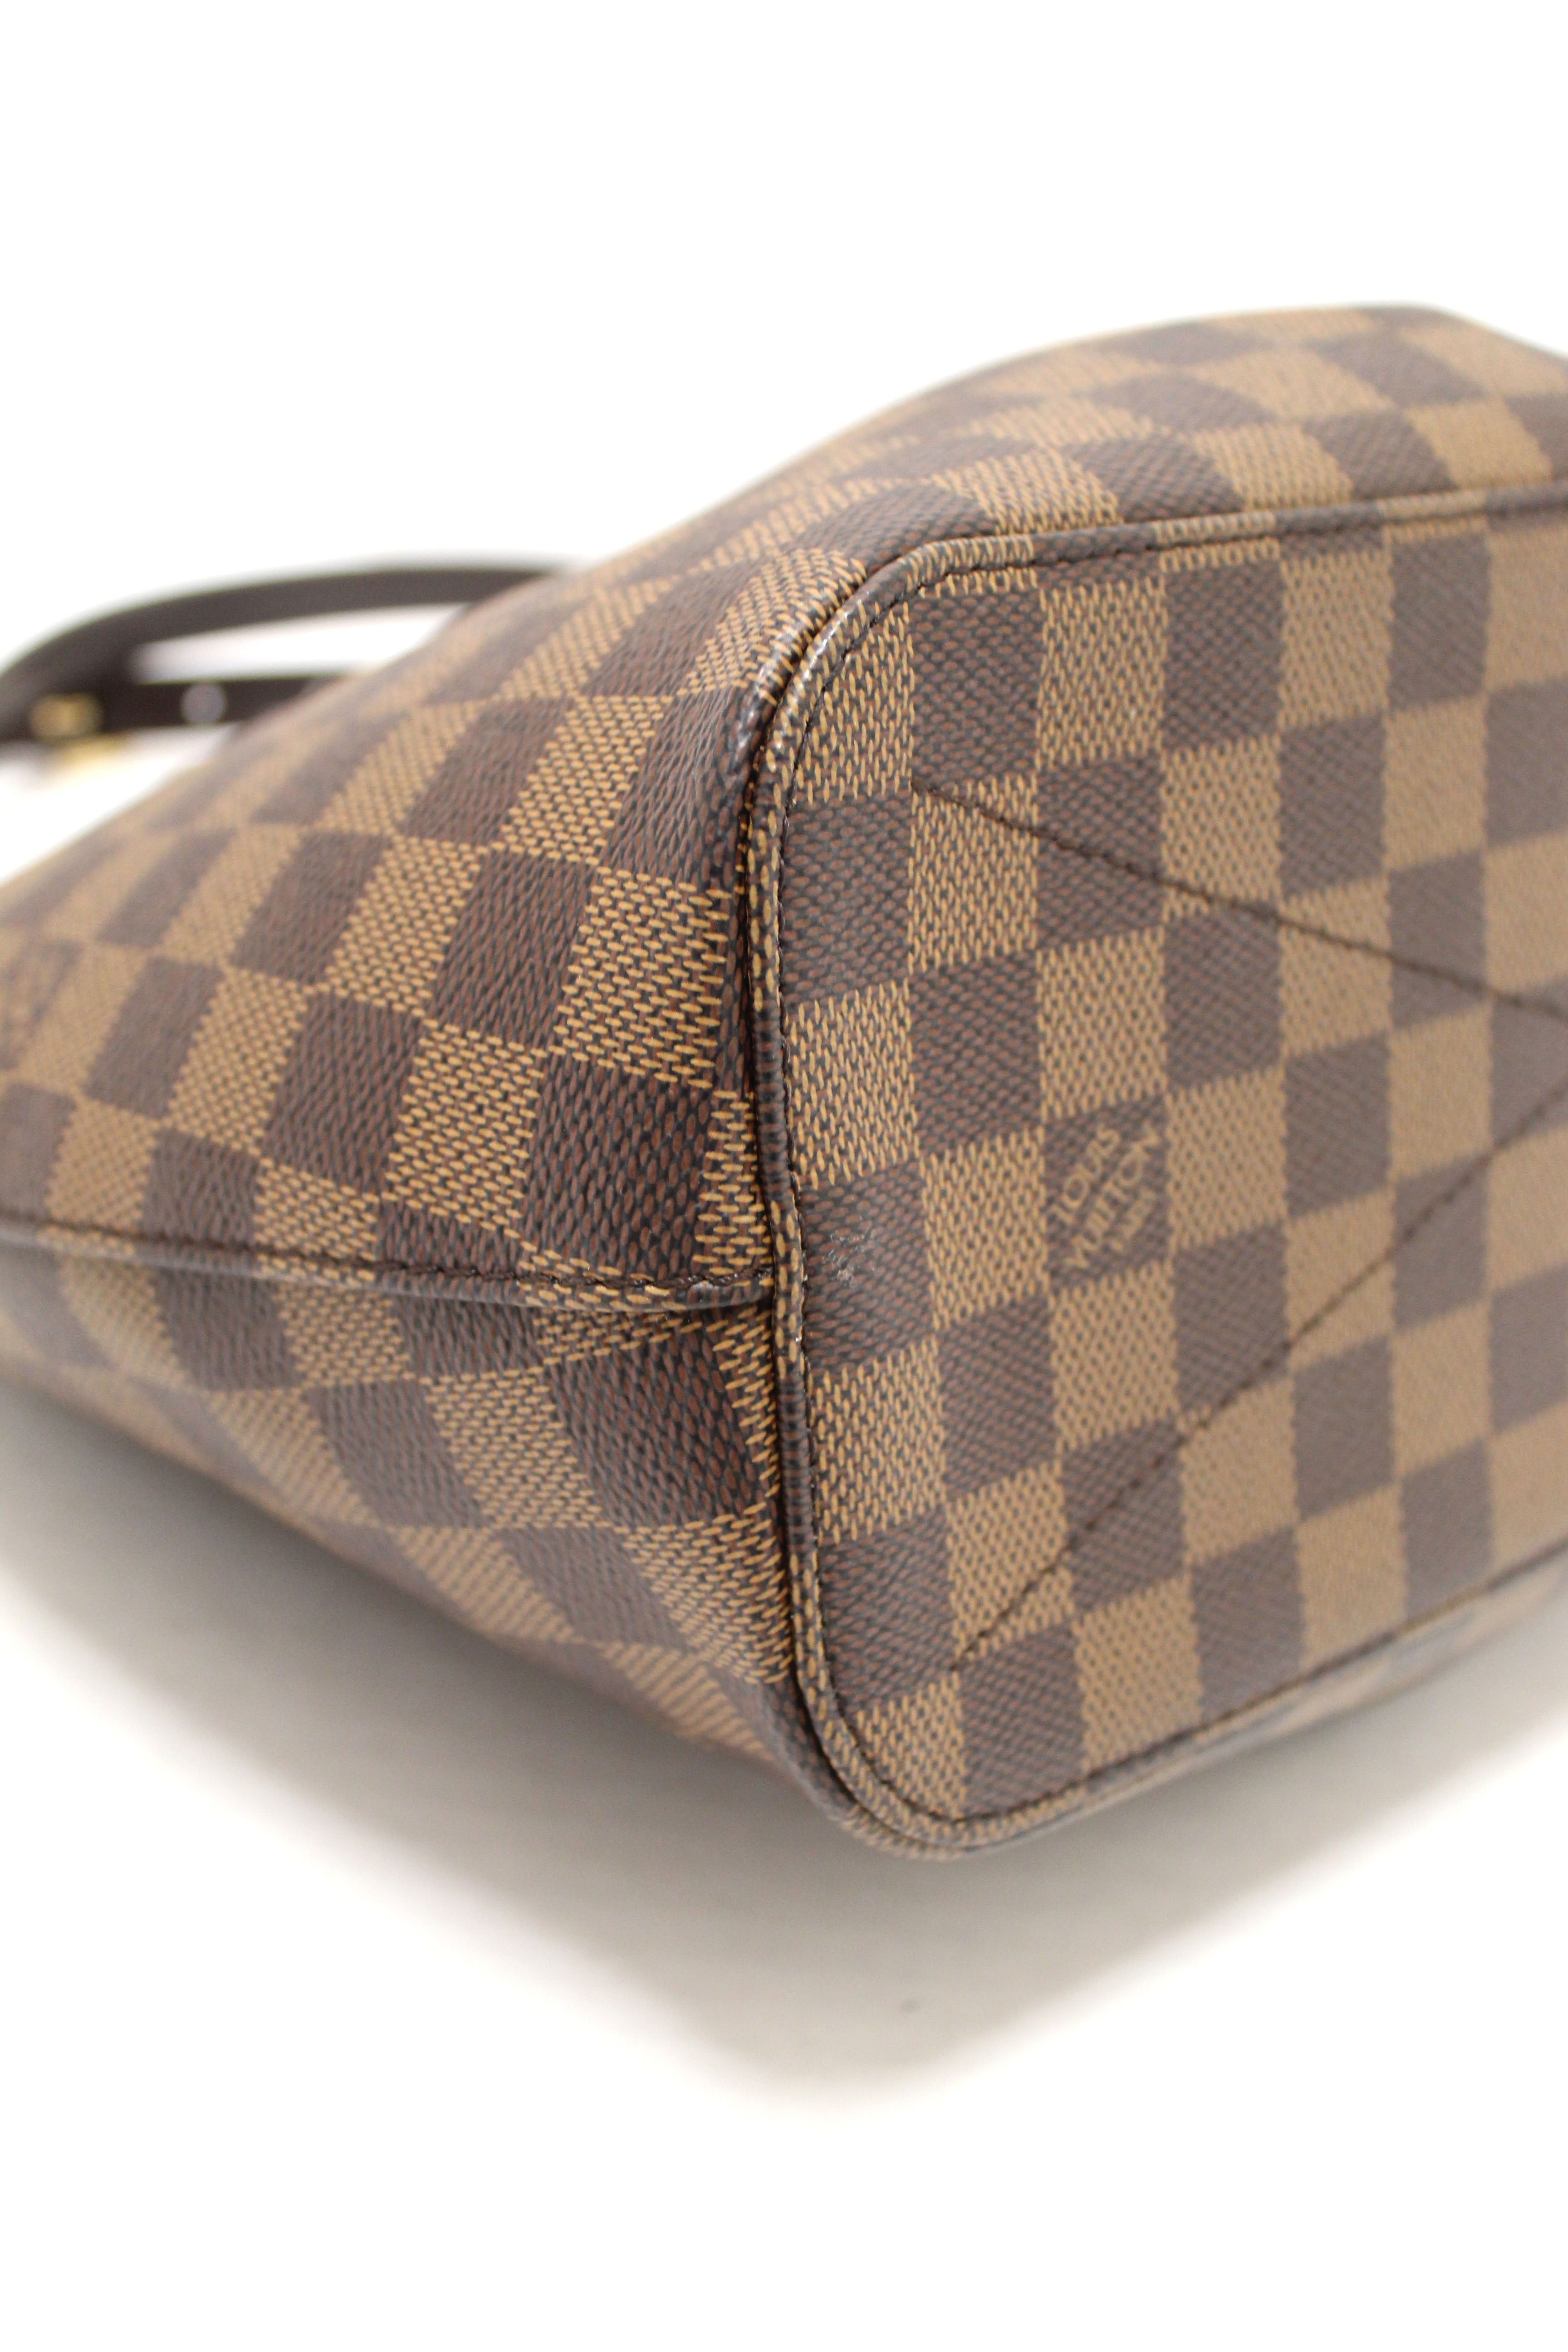 Authentic Louis Vuitton Damier Siena PM Shoulder Messenger Bag